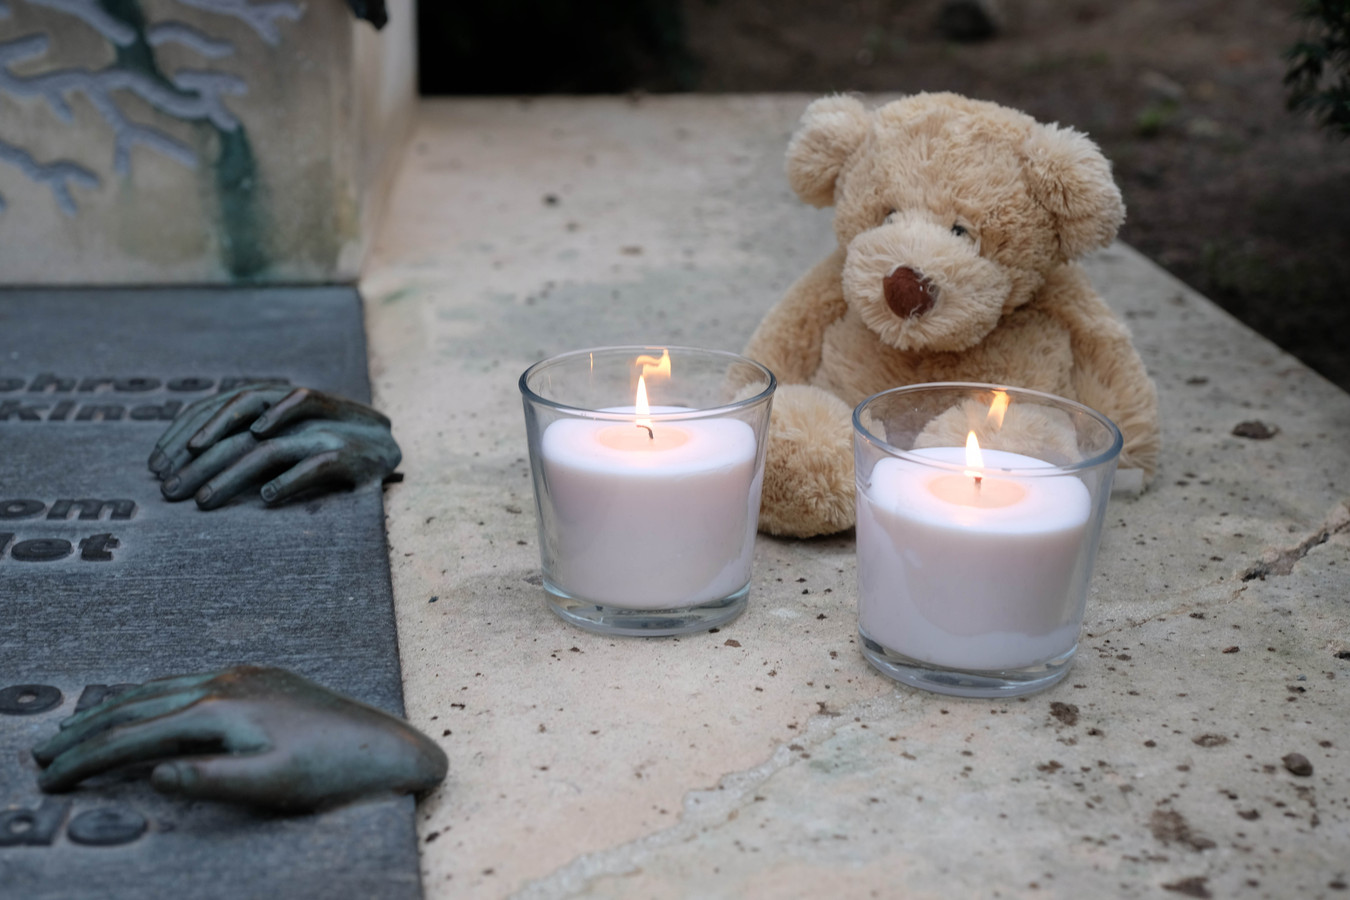 In Mechelen werd aan het Monument voor Verongelukte, Vermoorde en Vermiste Kinderen een wake gehouden voor Dean.